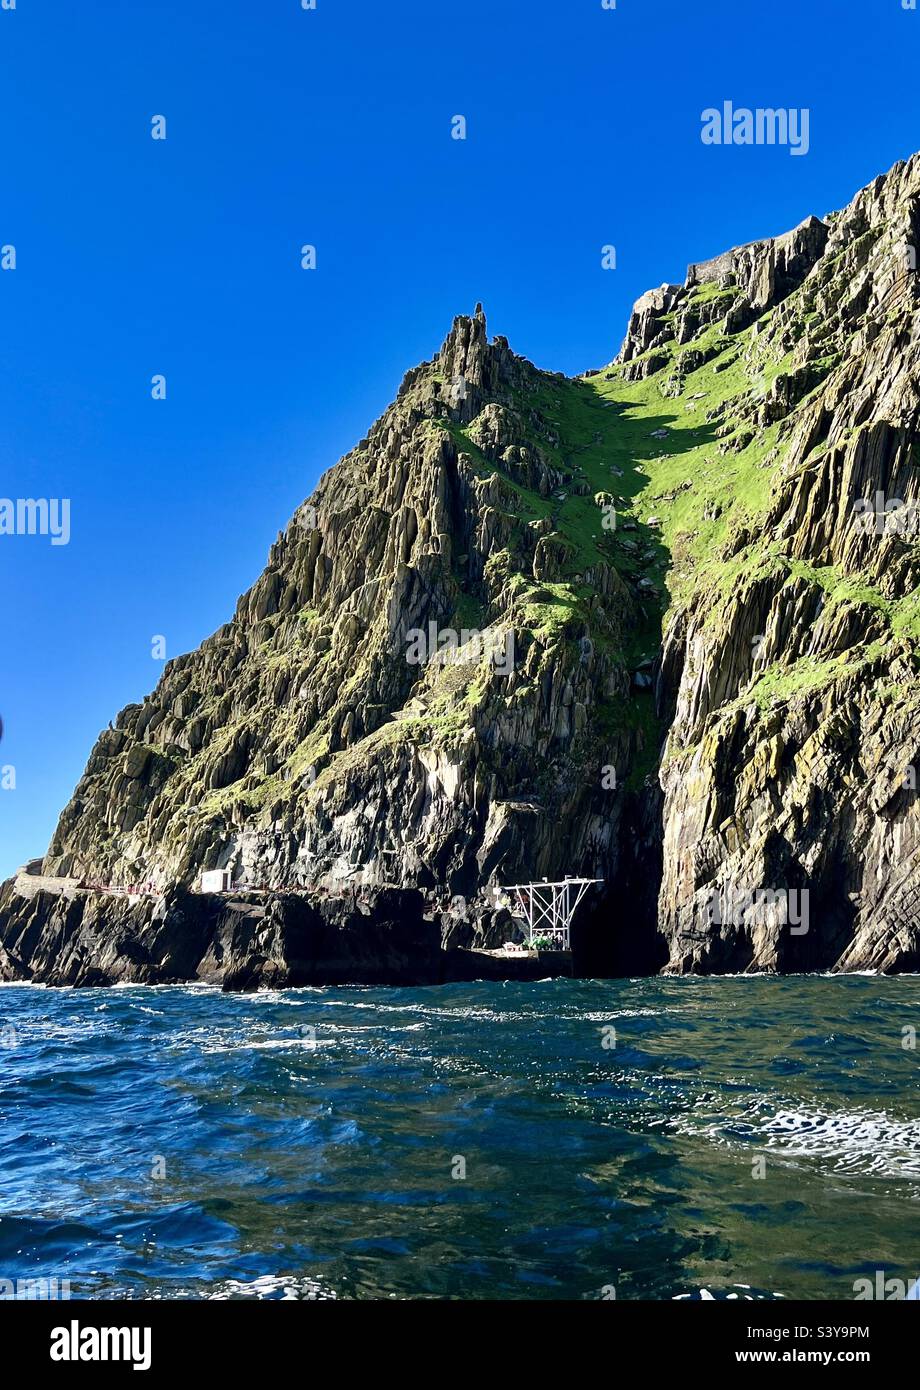 Lugar de aterrizaje de los barcos que le llevan a Skellig Michael - la antigua isla monástica en el condado de Kerry, República de Irlanda - en un día de verano caliente y claro al otro lado del océano Foto de stock